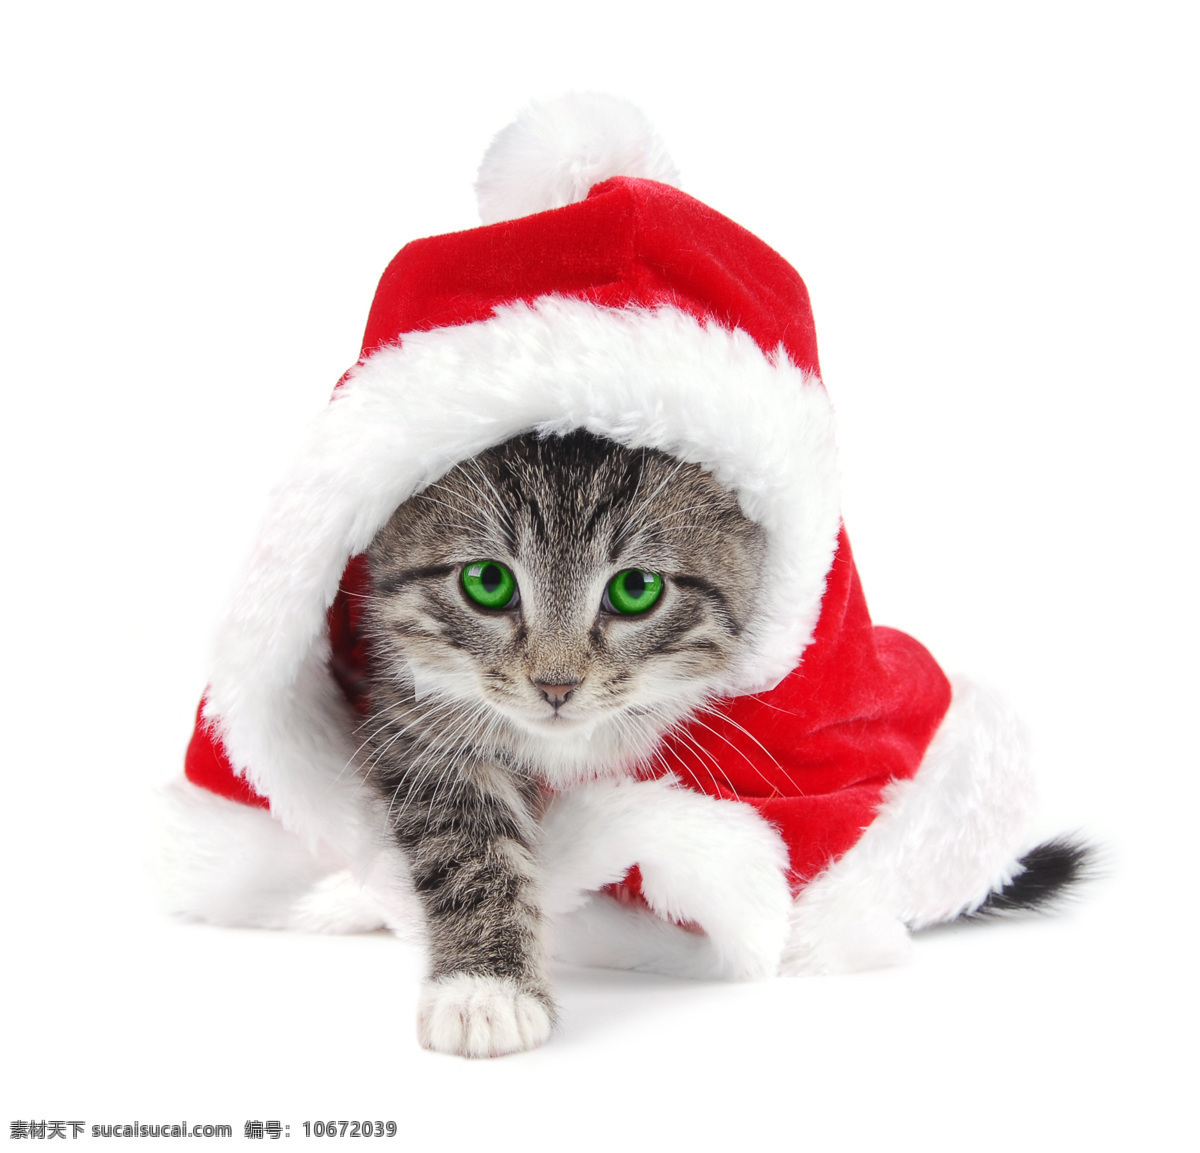 圣诞节 帽子 可爱 猫咪 节日素材 新年 动物 小猫 圣诞帽子 猫咪图片 生物世界